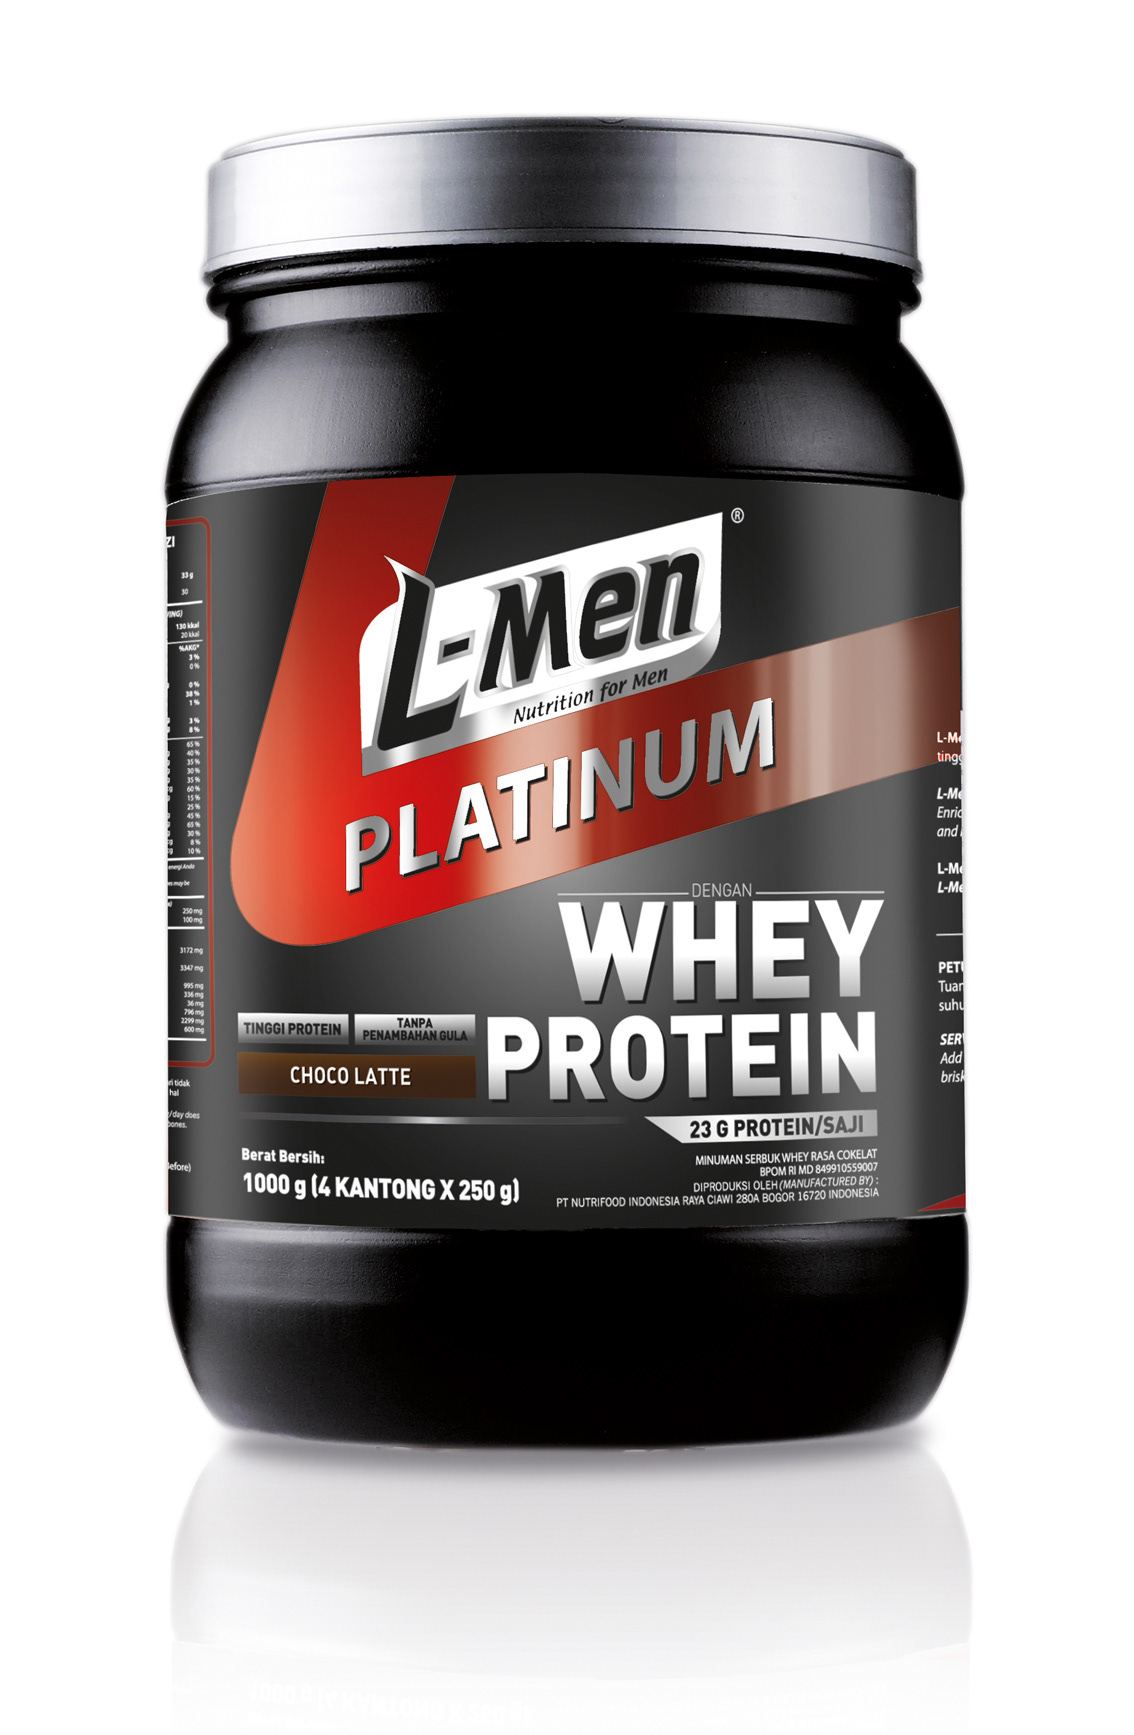 l-men Platinum nutrition Nutrifood